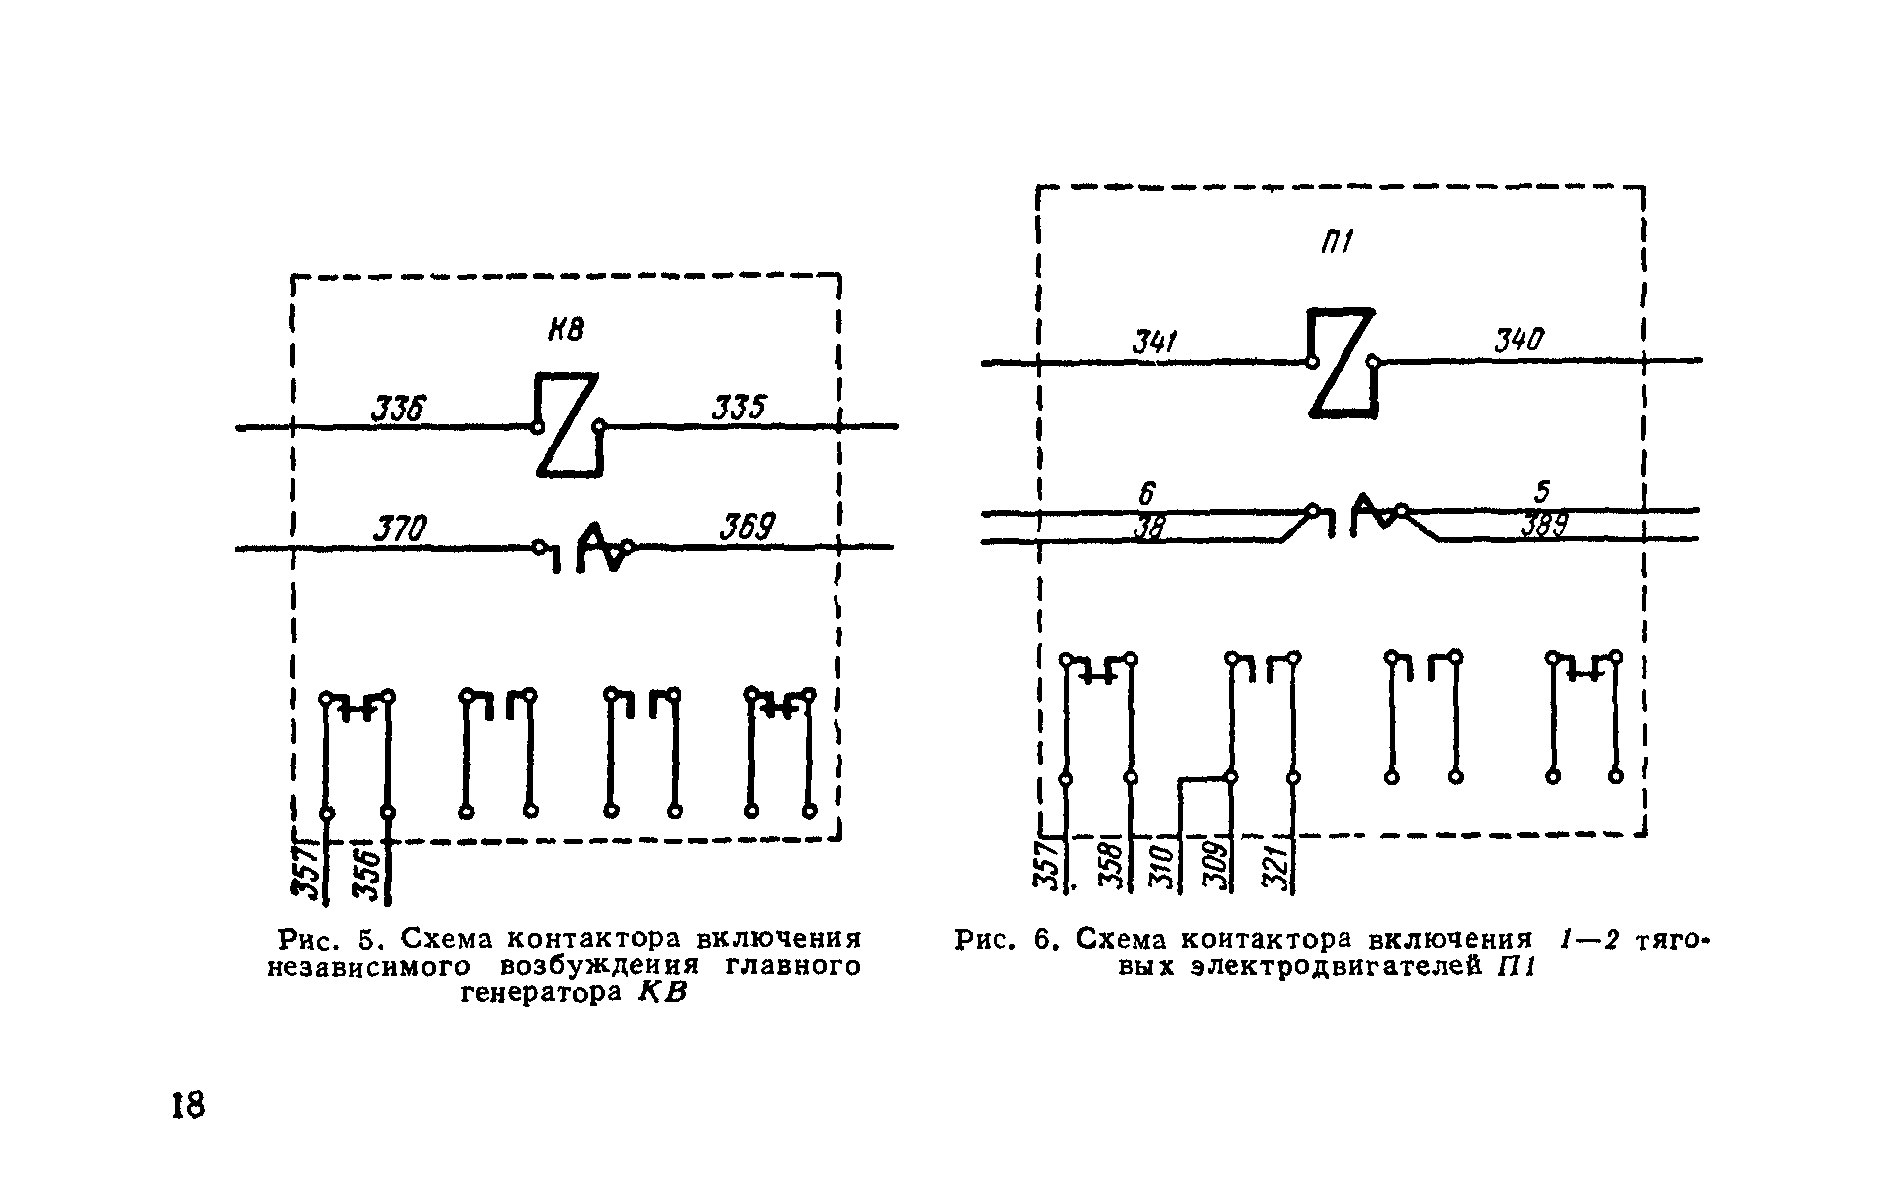 Рис. 5. Схема контактора включения независимого возбуждения главного генератора КВ
